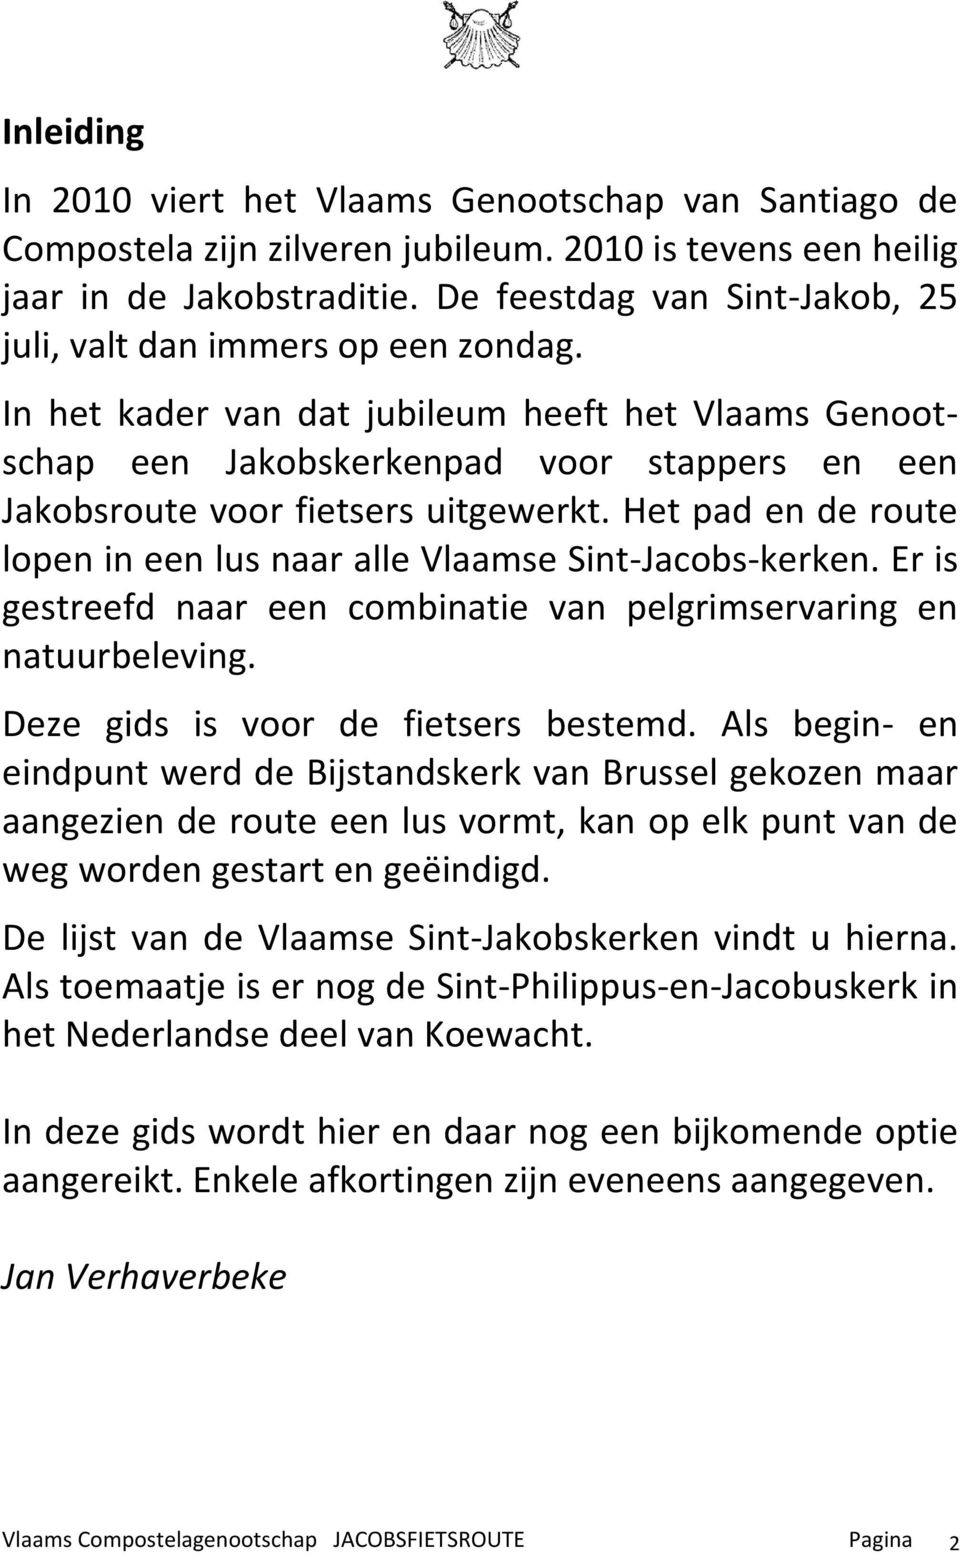 In het kader van dat jubileum heeft het Vlaams Genootschap een Jakobskerkenpad voor stappers en een Jakobsroute voor fietsers uitgewerkt.